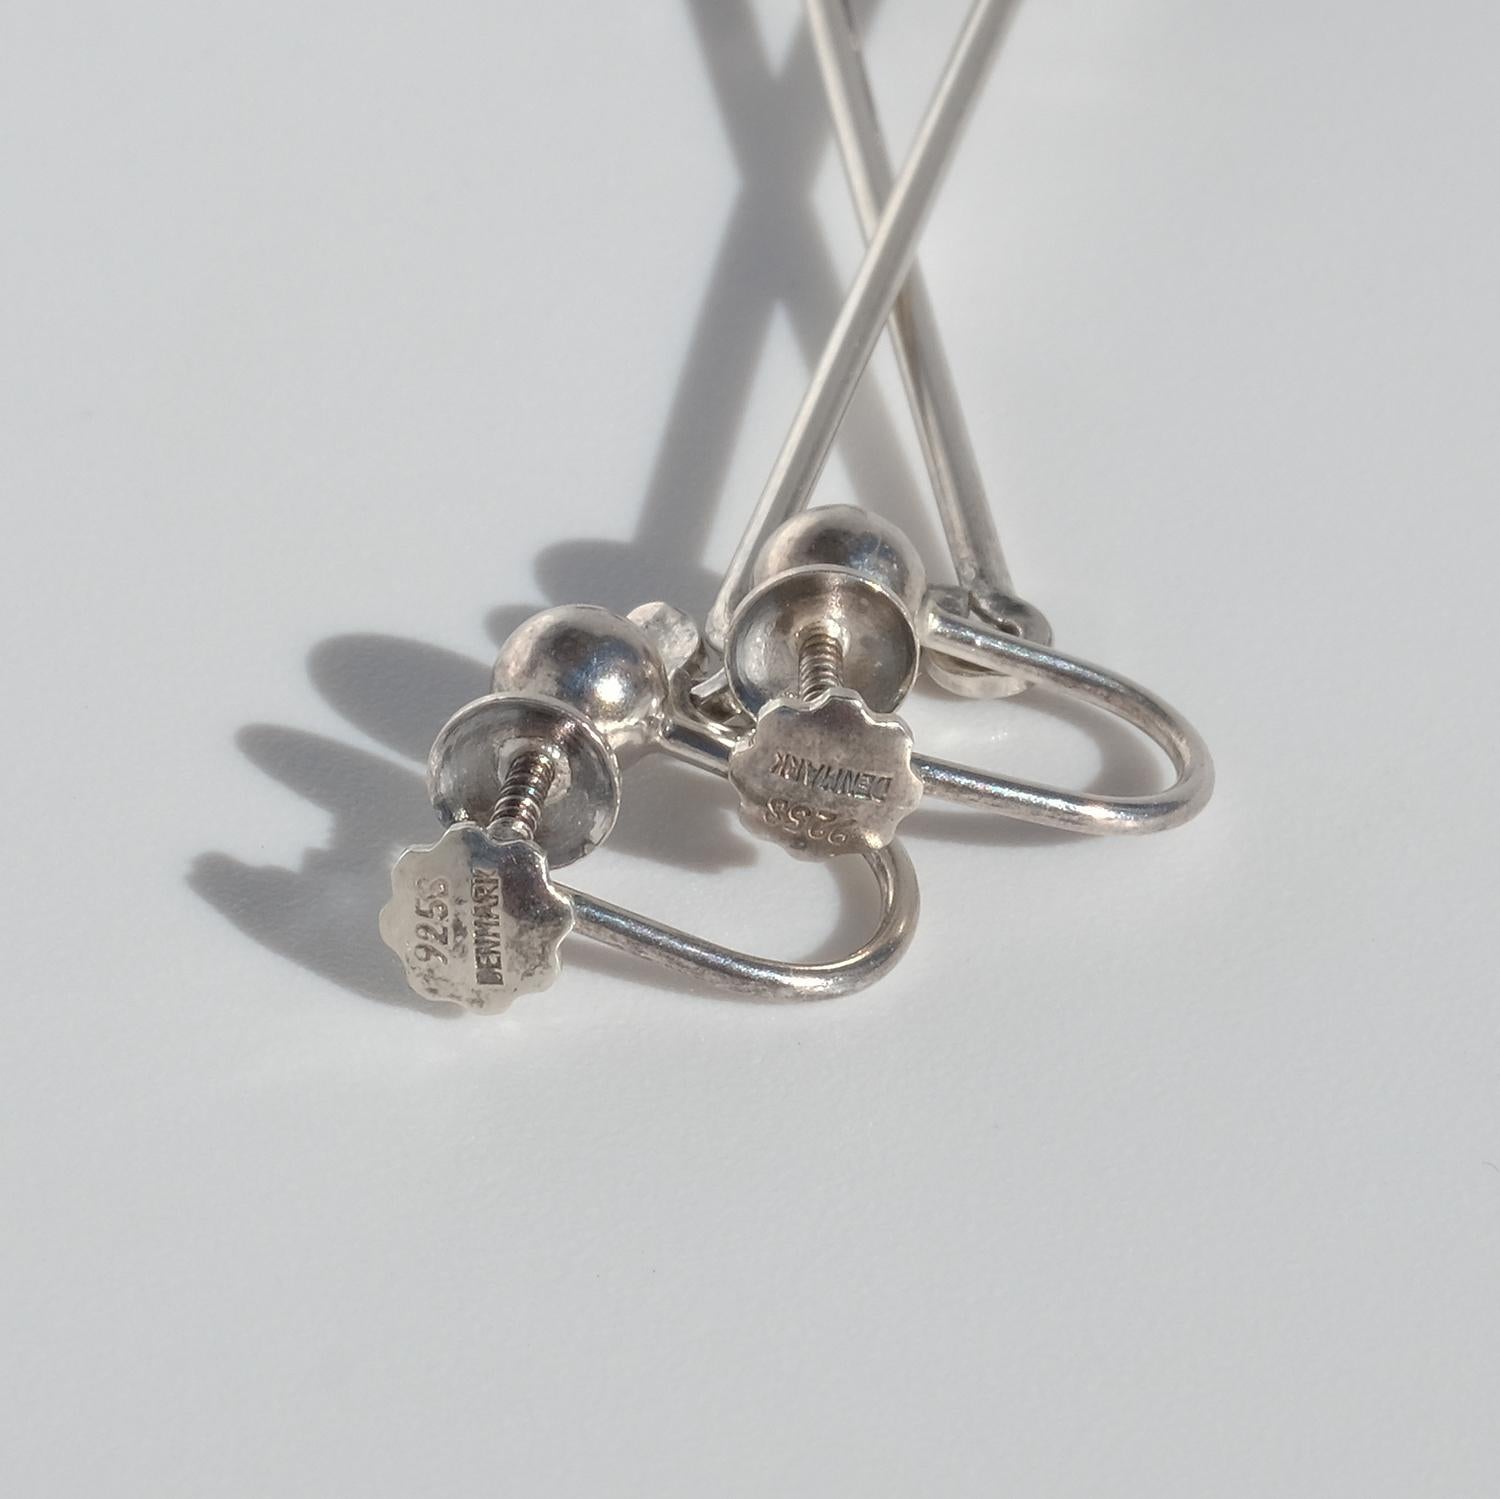 Women's or Men's Vintage Silver and Amethyst Earrings, “Dew Drop”, by Vivianna Torun Bülow-Hübe For Sale